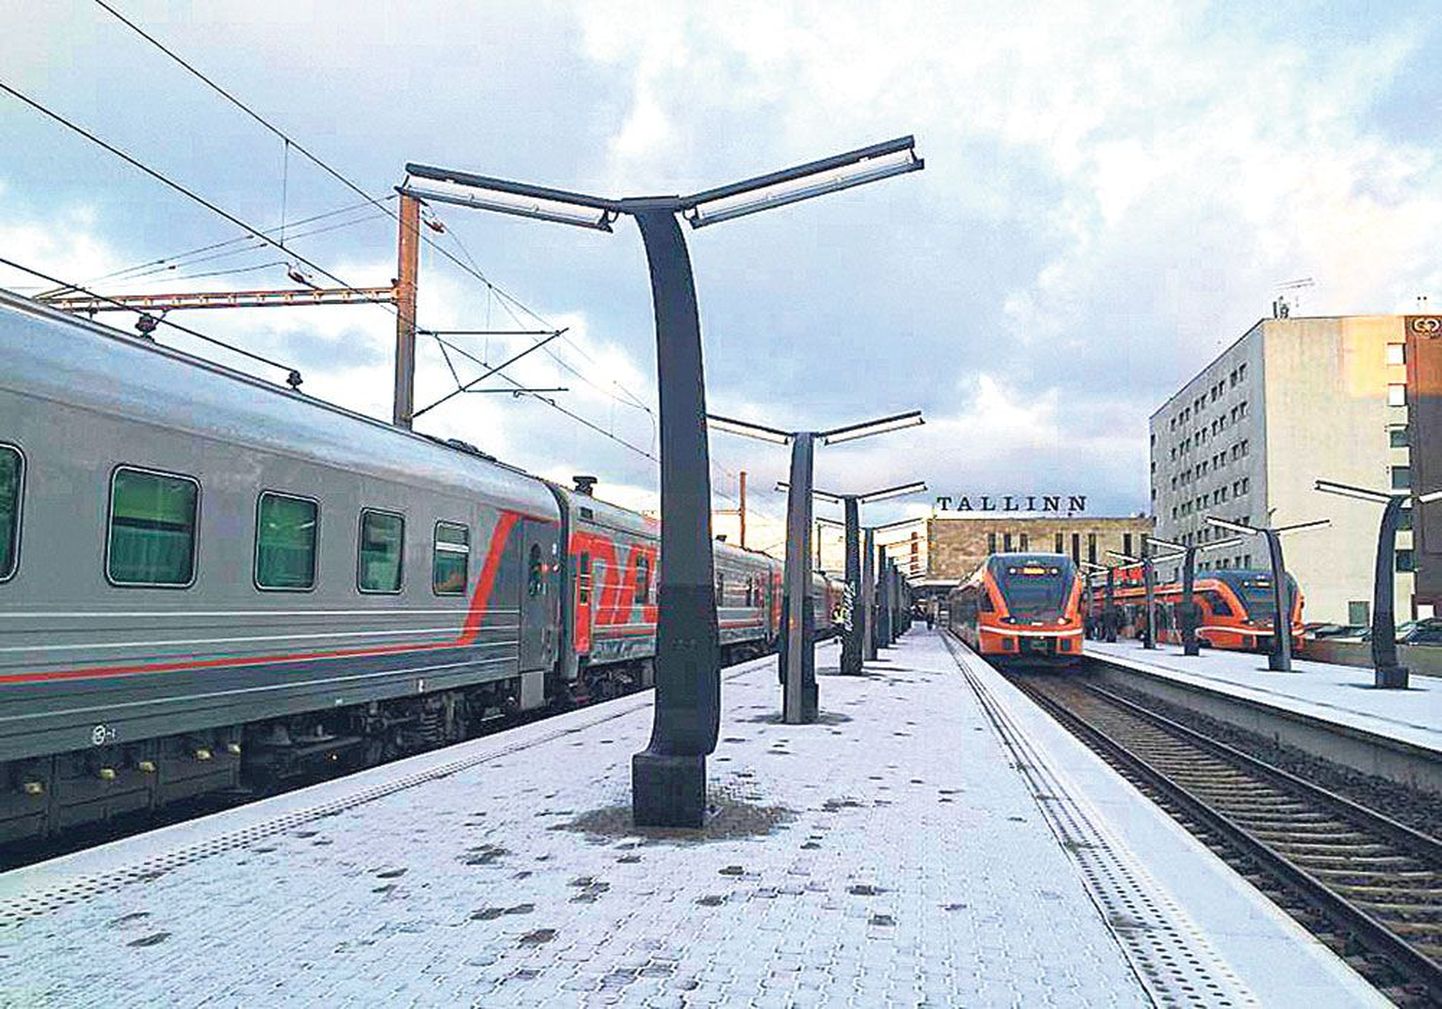 Балтийский вокзал в Таллинне: поезд на Петербург (на фото слева) и Балтийский вокзал в Петербурге: отправляющийся в Таллинн автобус. Приезжаете вы в Петербург на автобусе или на поезде, и в том и в другом случае станция метро находится буквально в двух шагах от остановки.